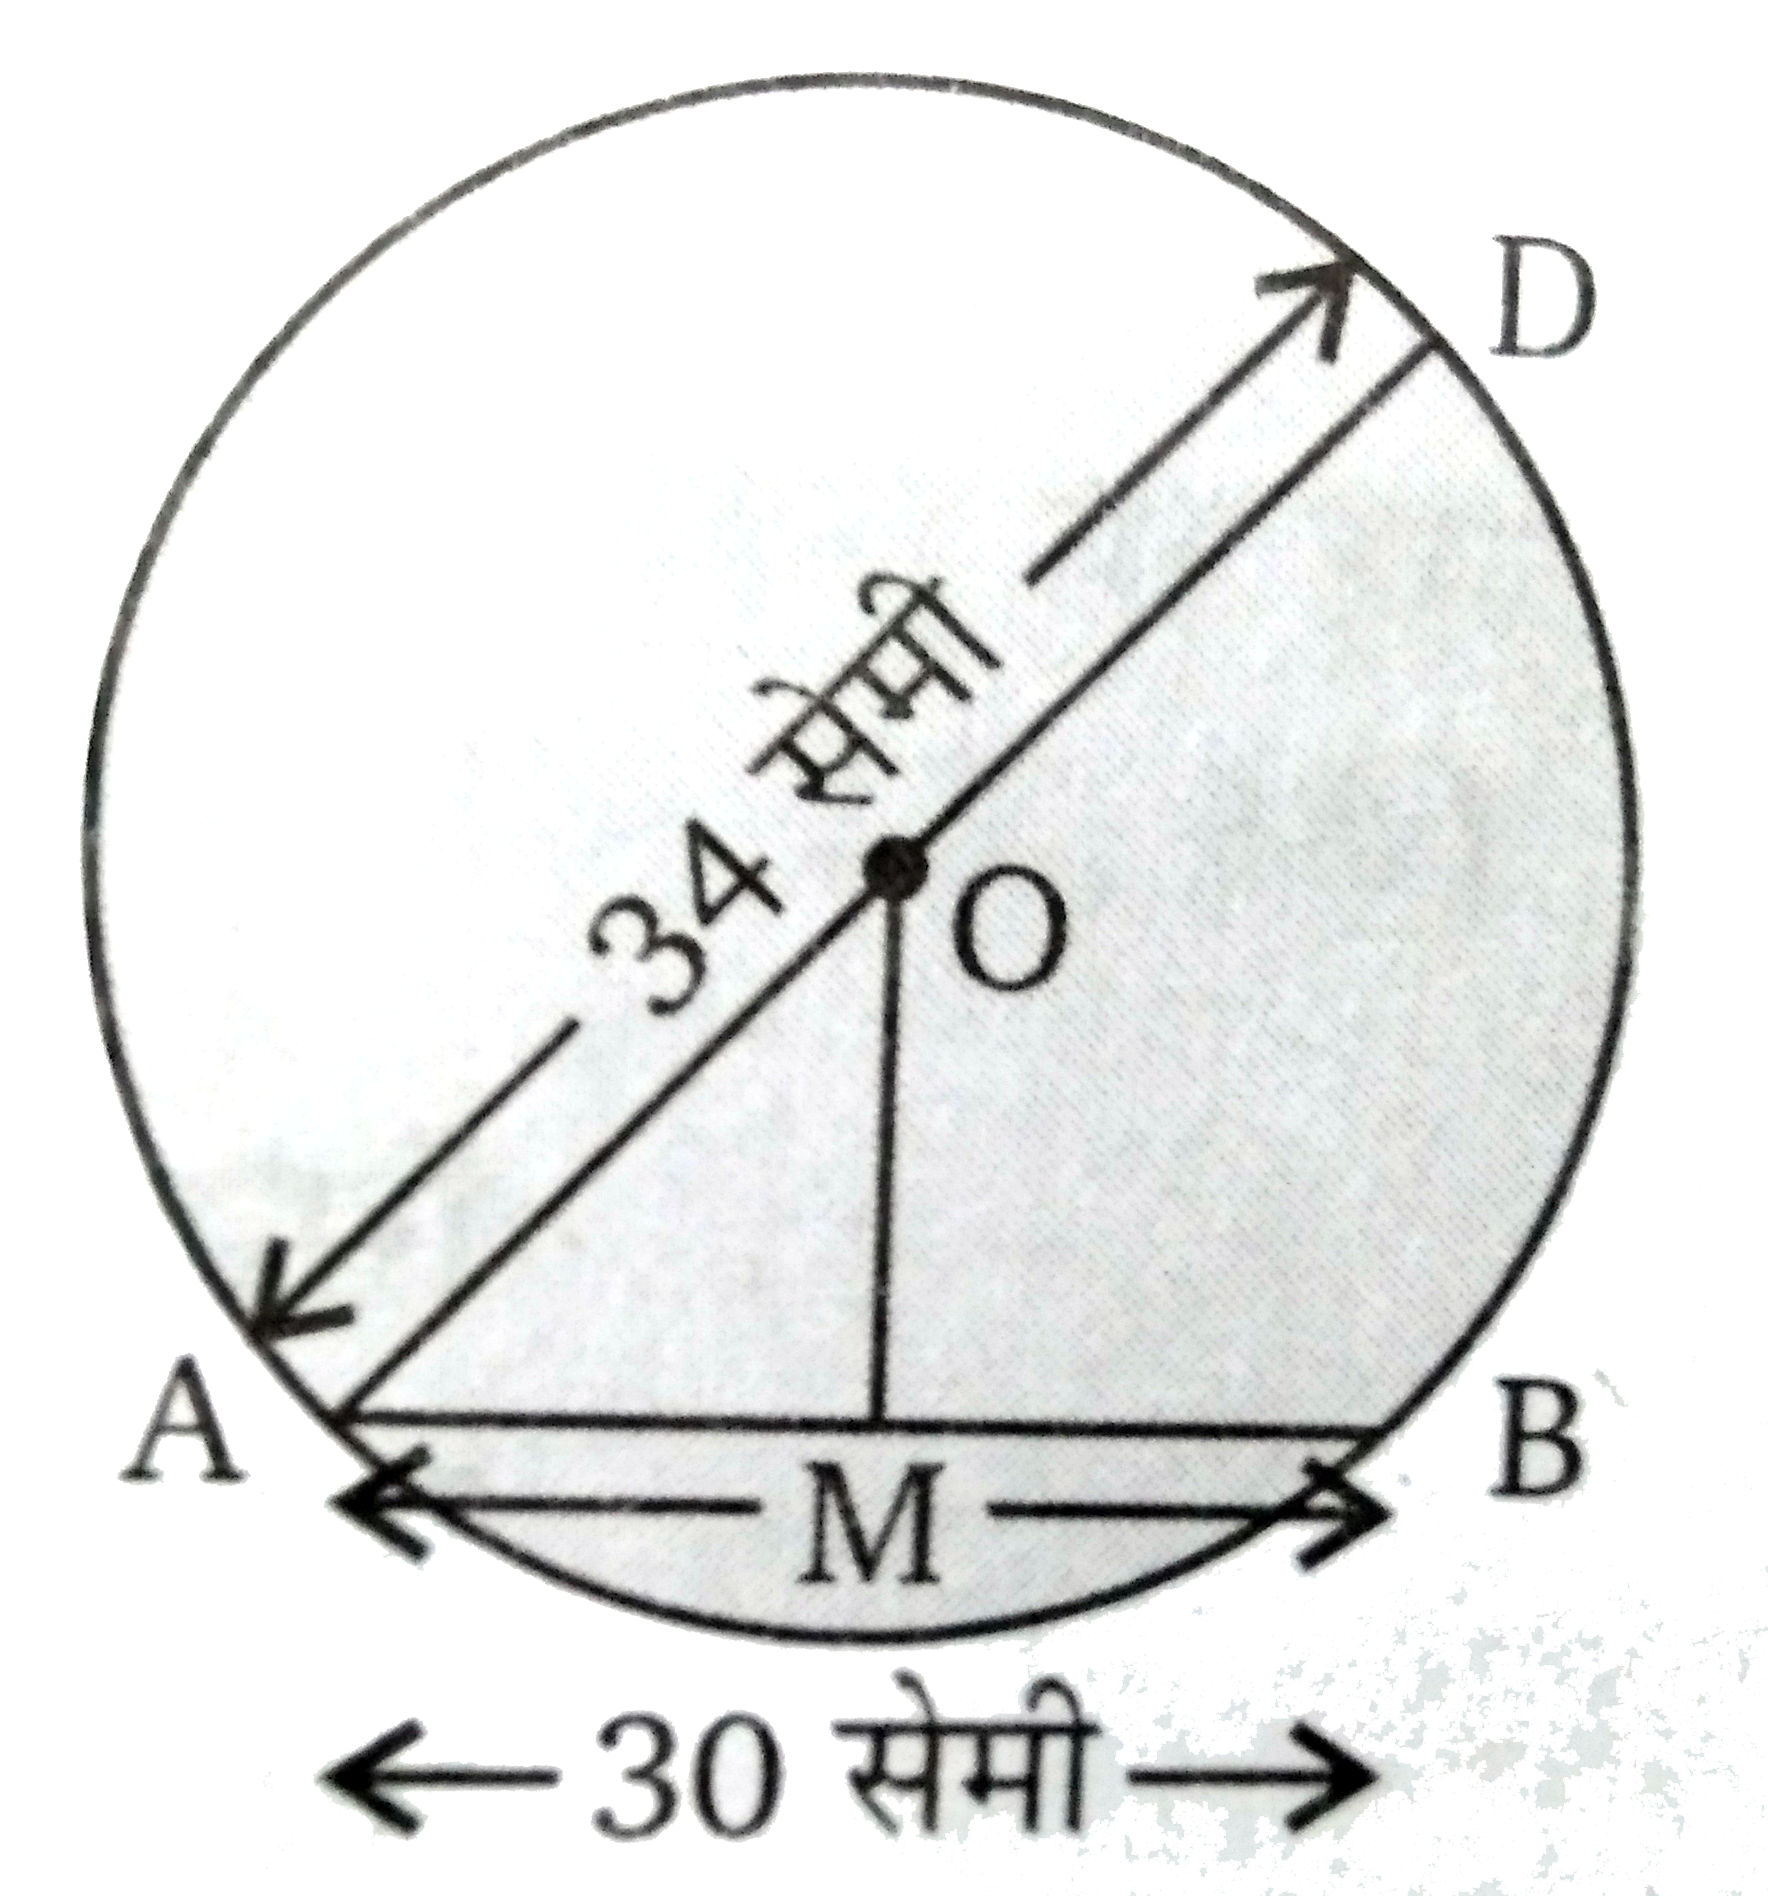 चित्र में O वृत्त का केन्द्र है तथा एक जीवा AB = 30 सेमी है तथा इसका व्यास AD = 34 सेमी है। जीवा AB की केन्द्र O से दूरी ज्ञात कीजिए।